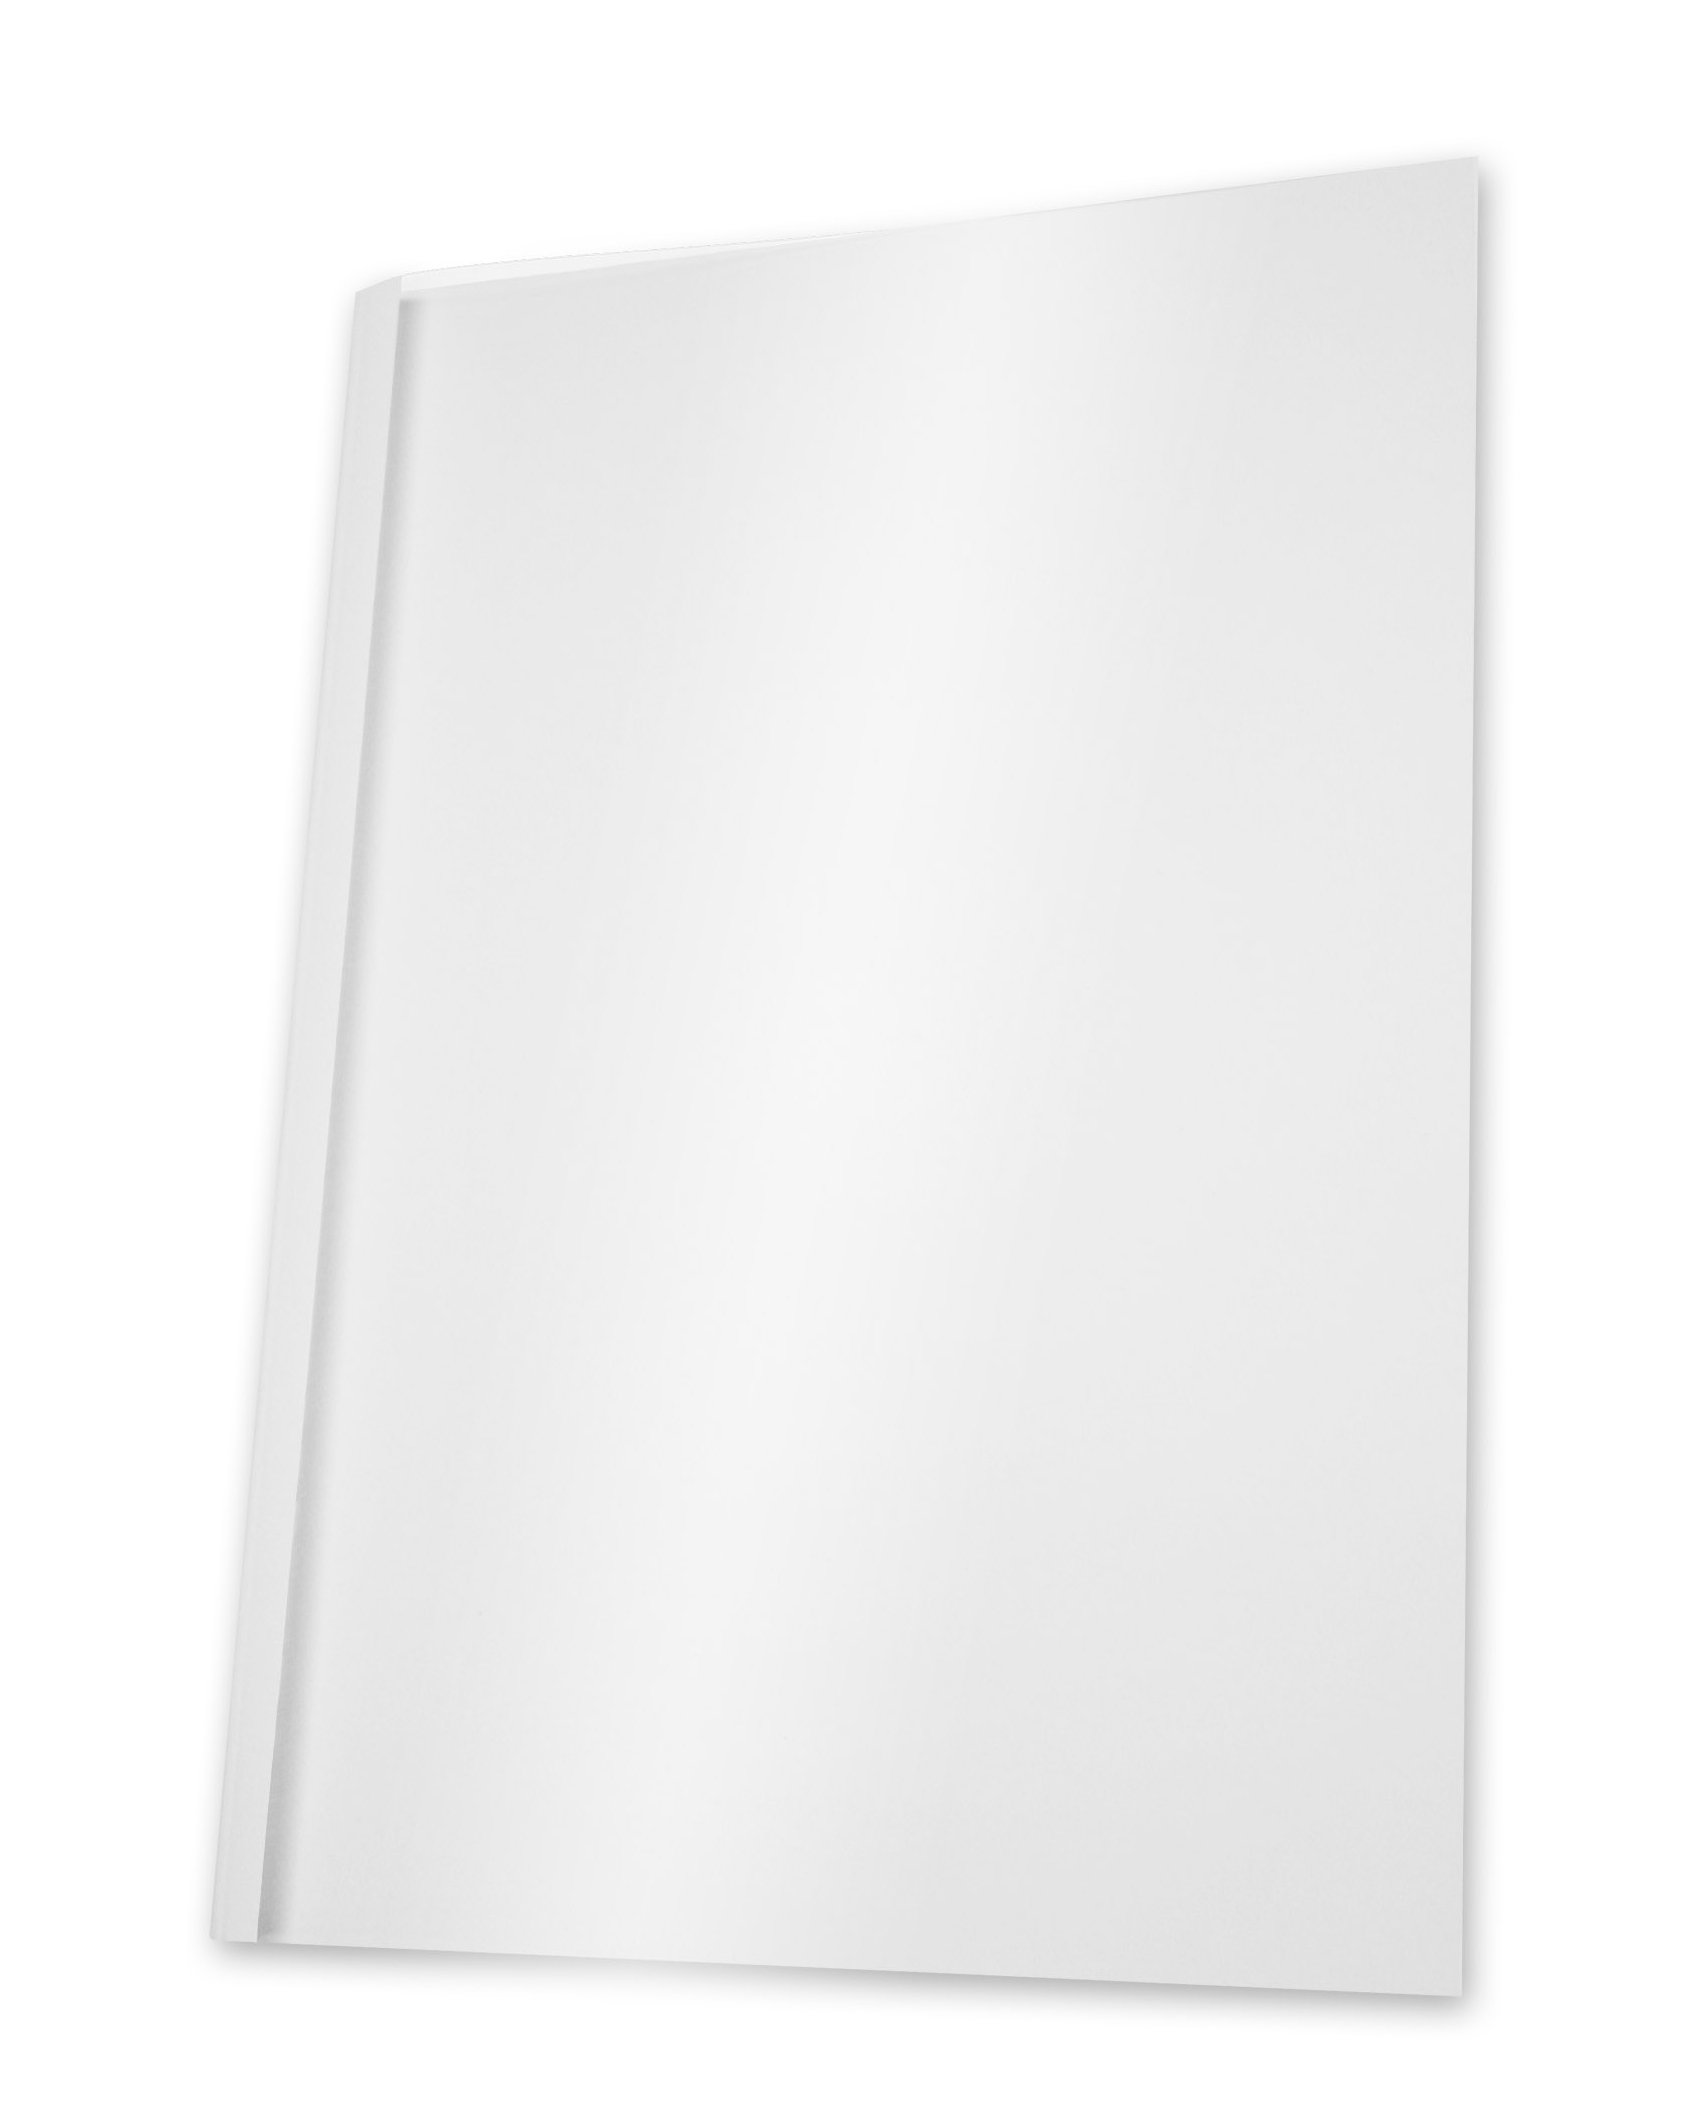 Pavo Thermo-bindemappen A4, Rückenbreite 4 mm, 100-er Pack, 31-40 Blatt, weiß/transparent